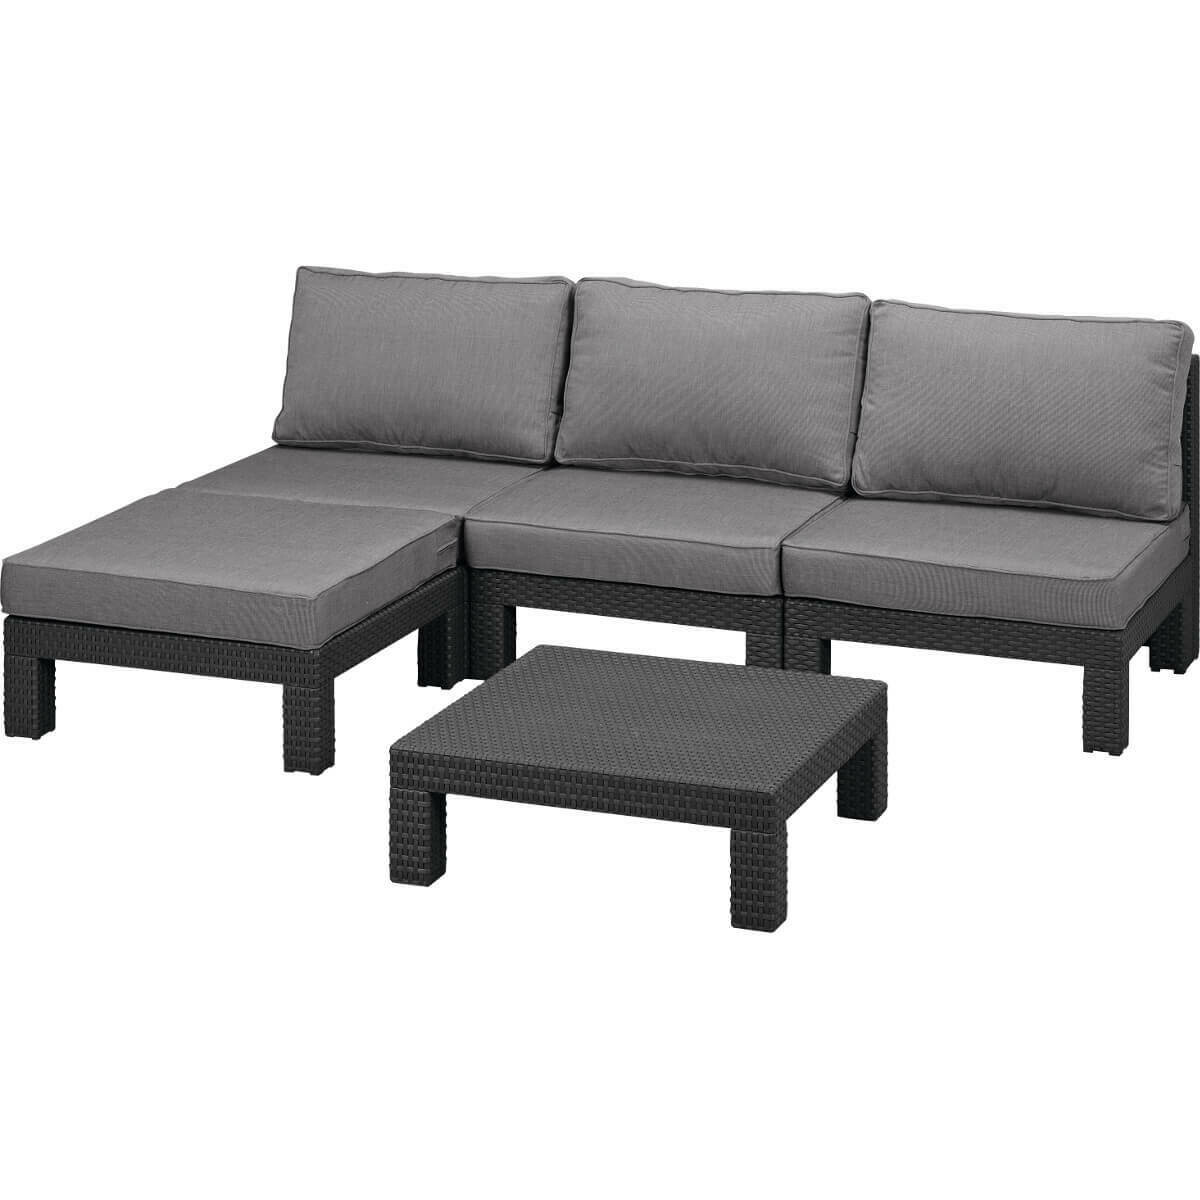 Комплект мебели Nevada low, цвет: графит - прохладный серый